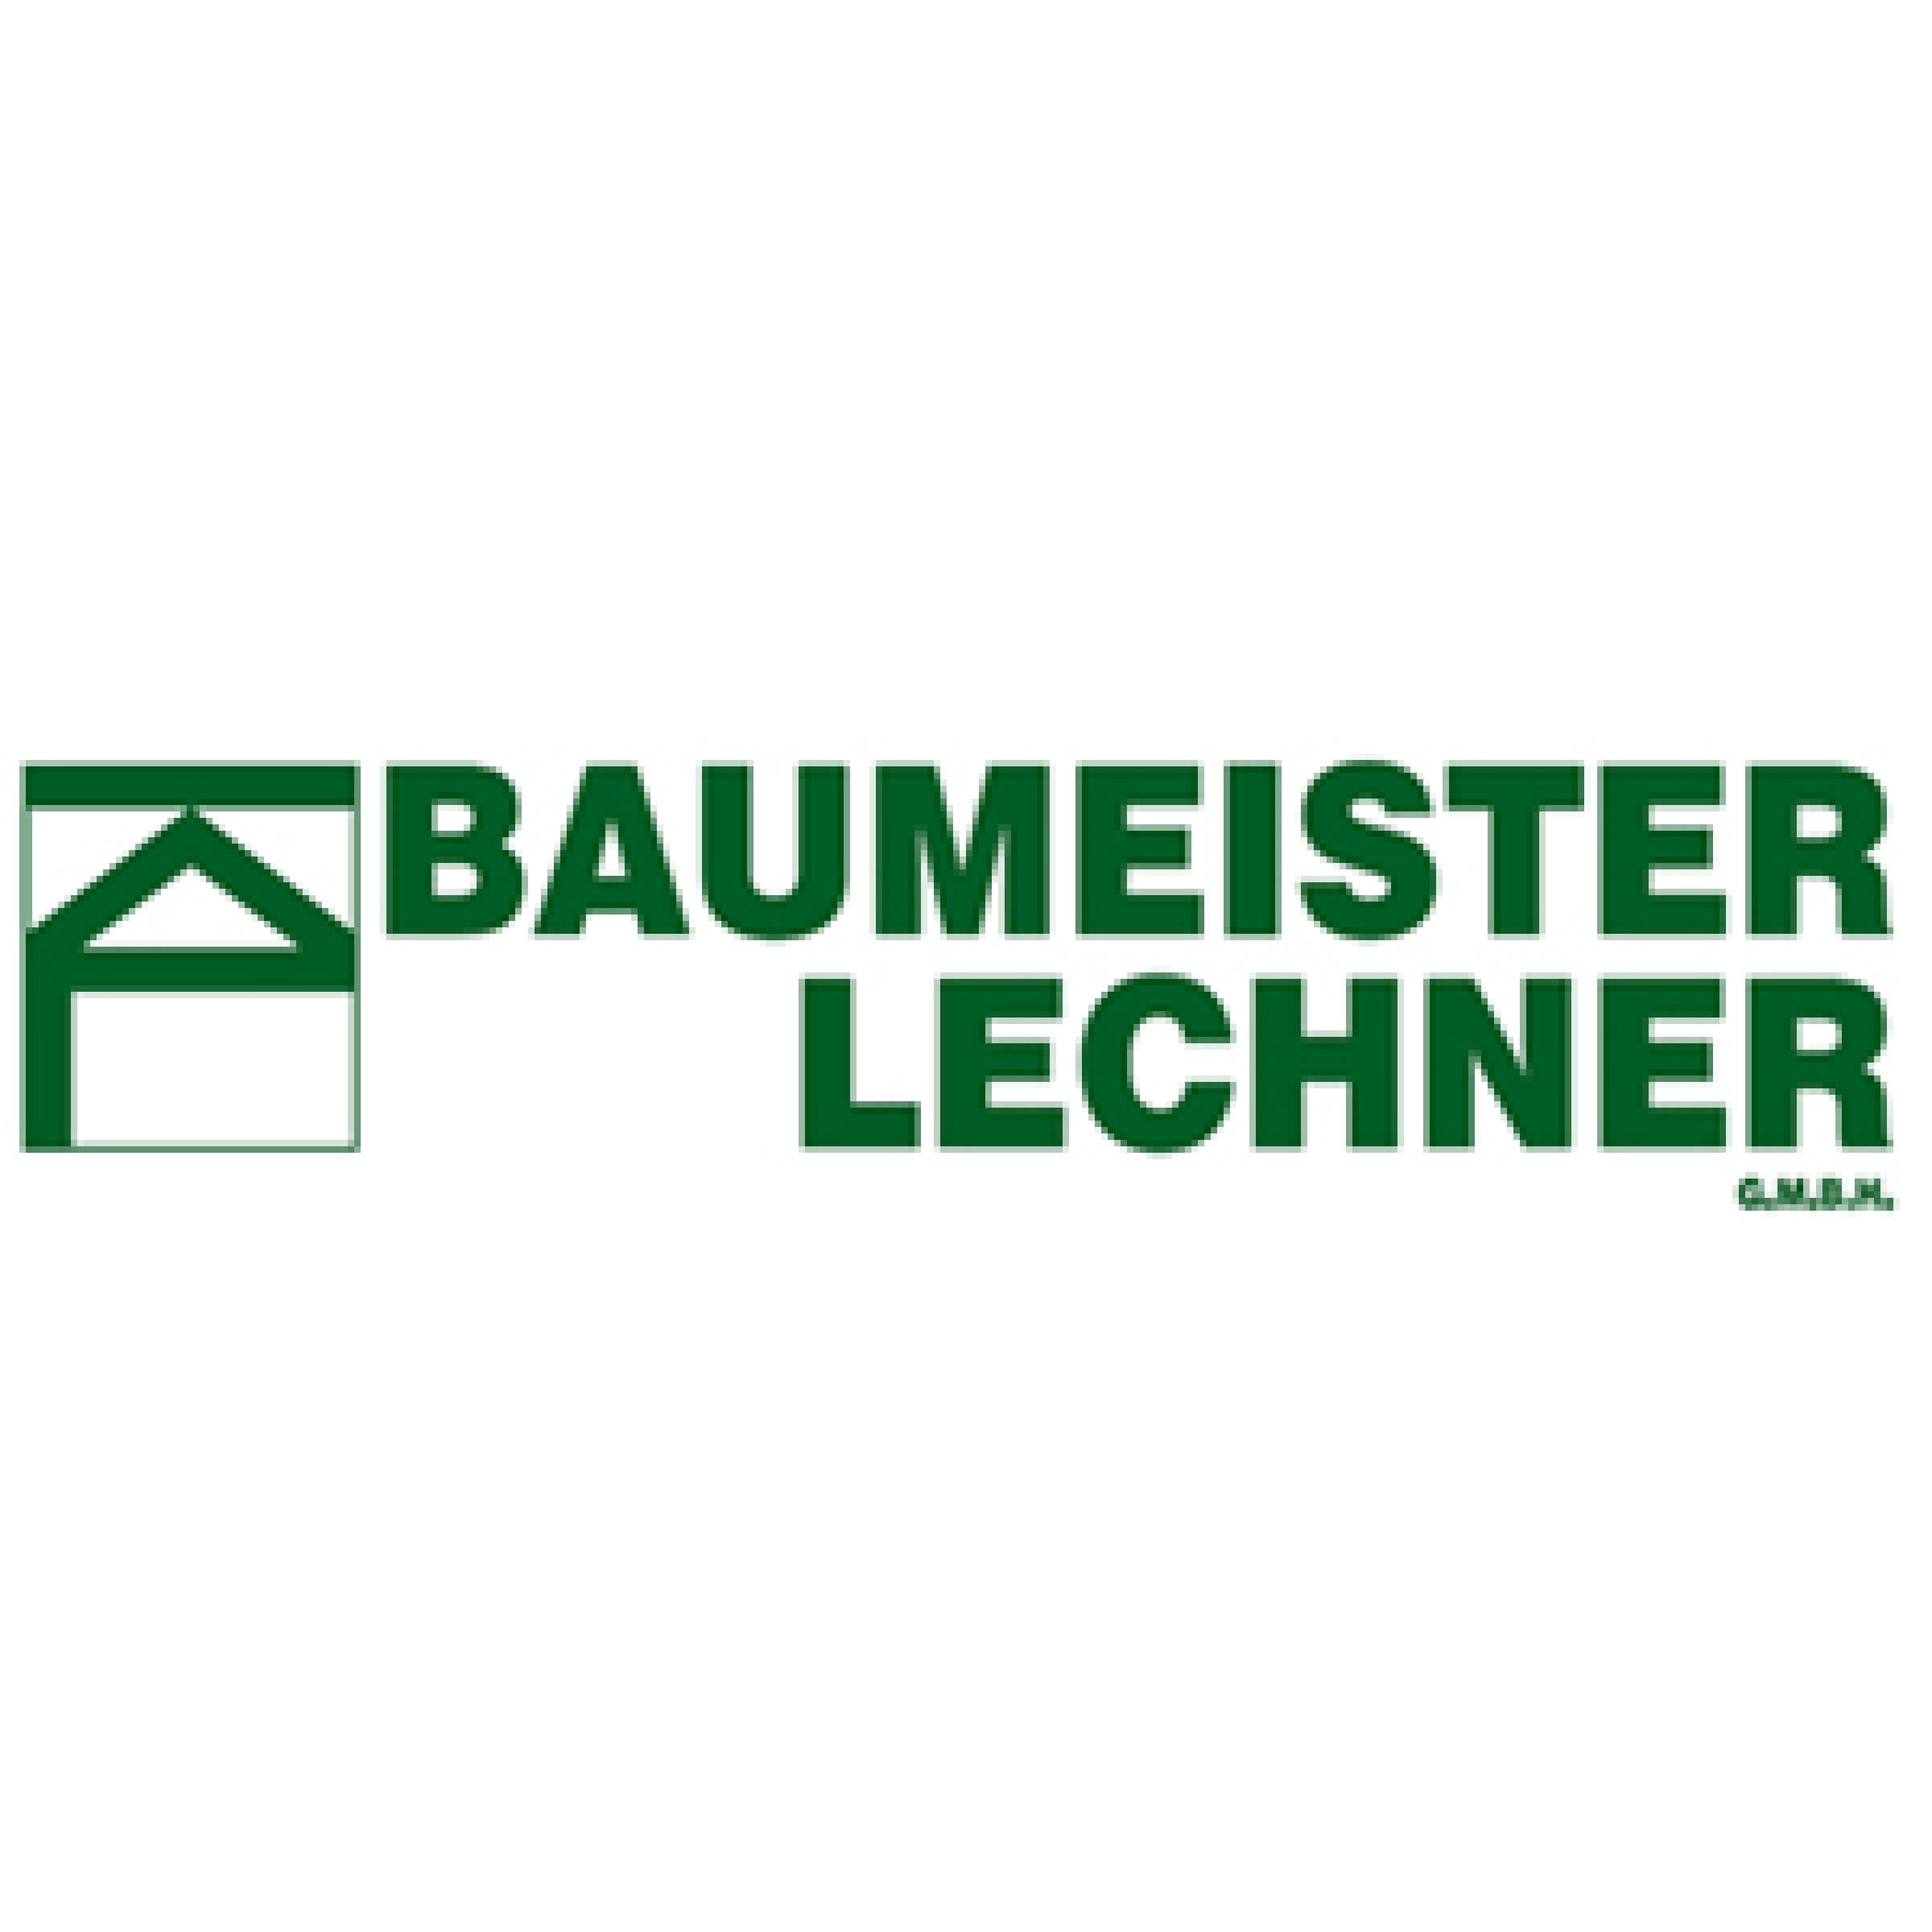 Baumeister Lechner GmbH